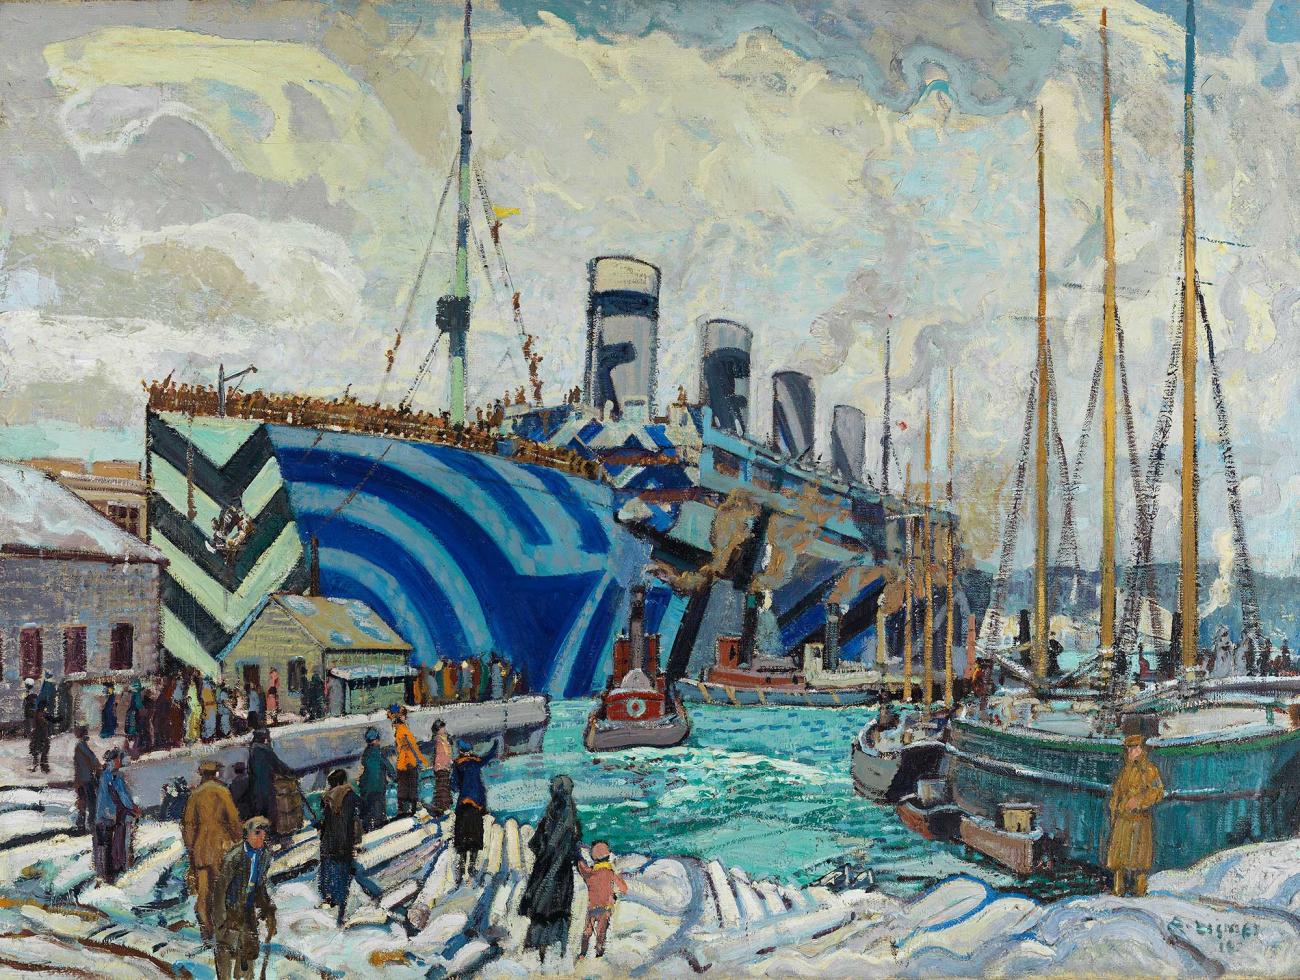 Peinture d’un bateau éblouissant avec des motifs géométriques dans des tons de bleu.